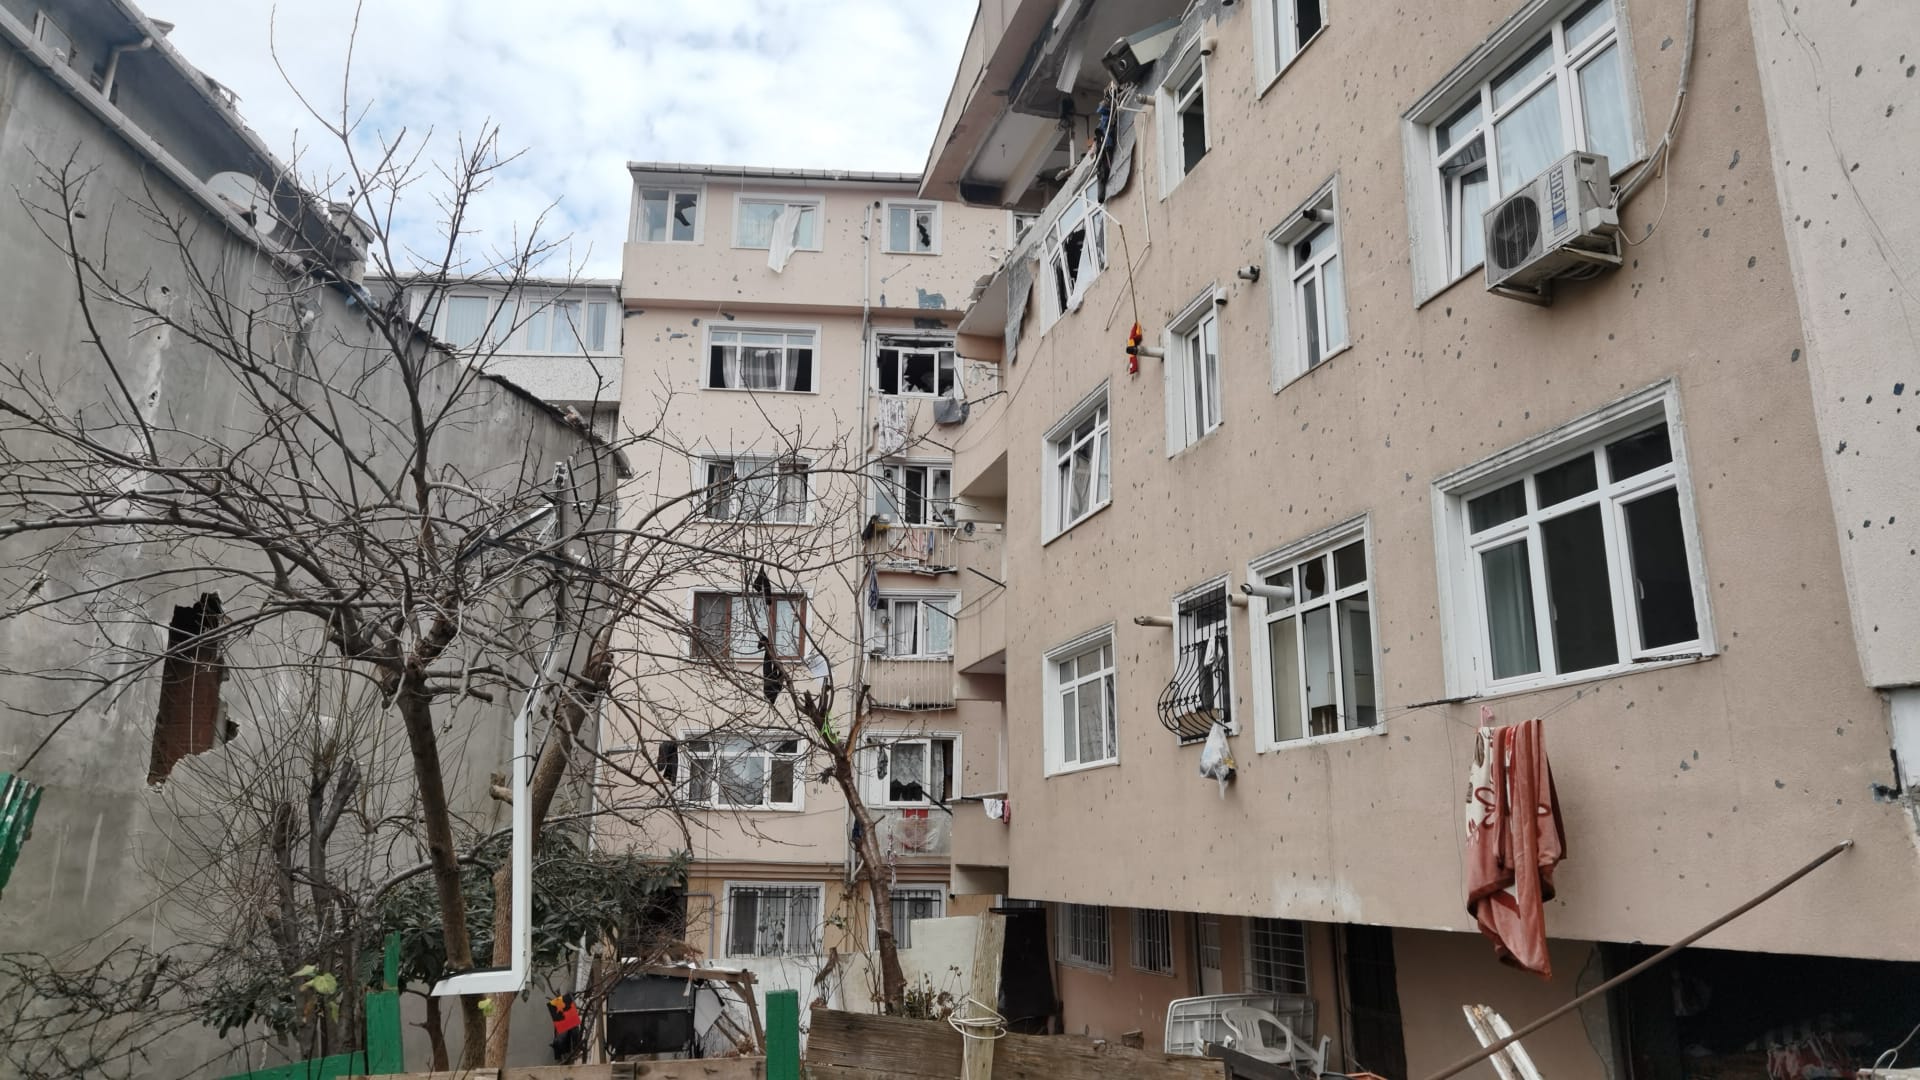 Son dakika | İstanbul'daki patlama hakkında yeni gelişme! Vali Yerlikaya yardım açıklamasında bulundu